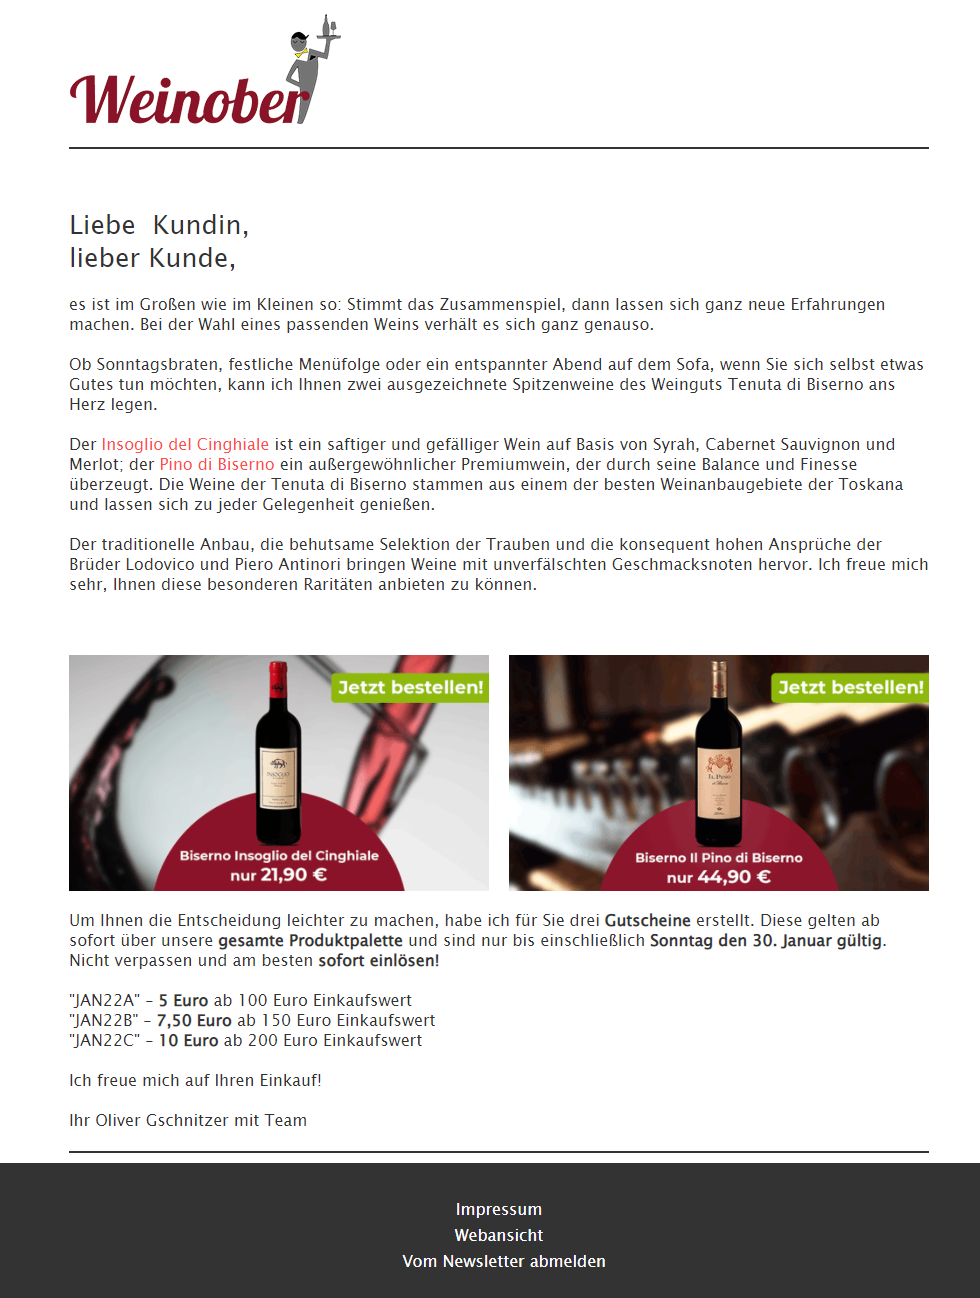 Gutscheincodes per Newsletter versenden - Beispiel Weinober UG